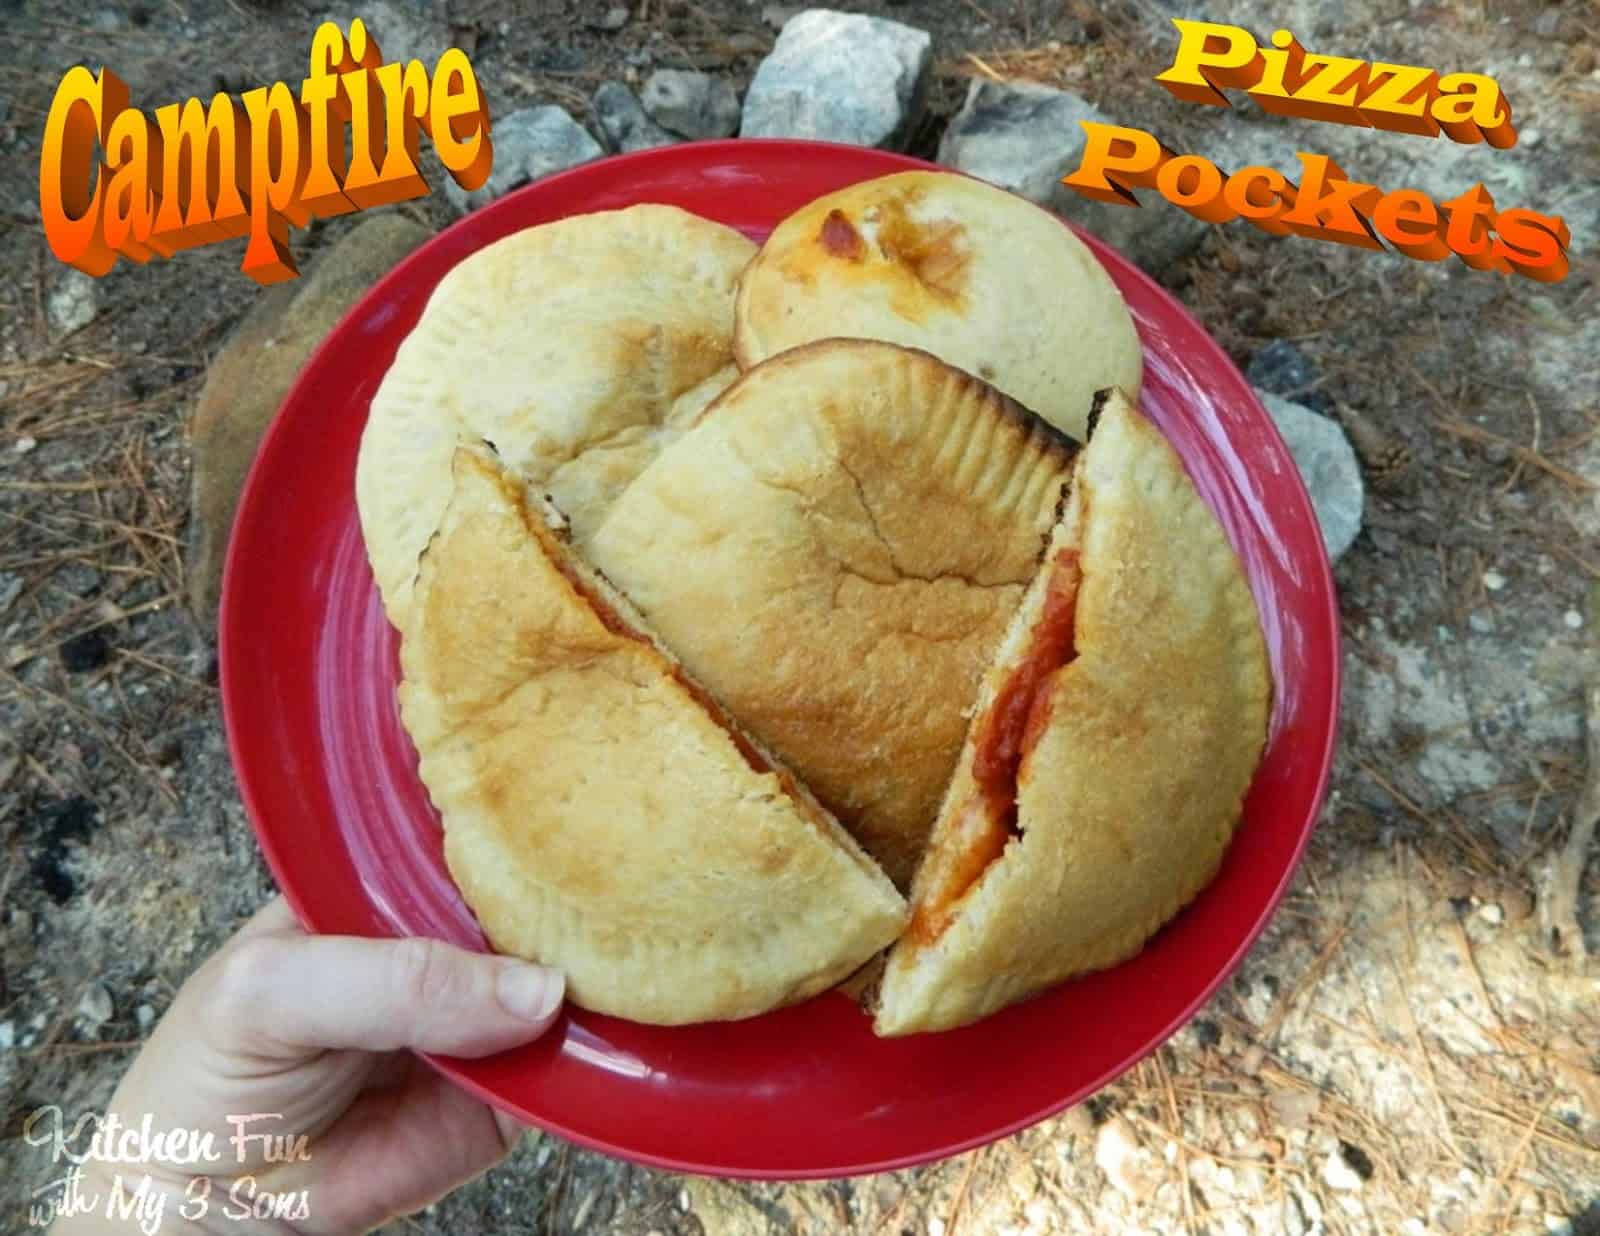 Campfire pizza pockets